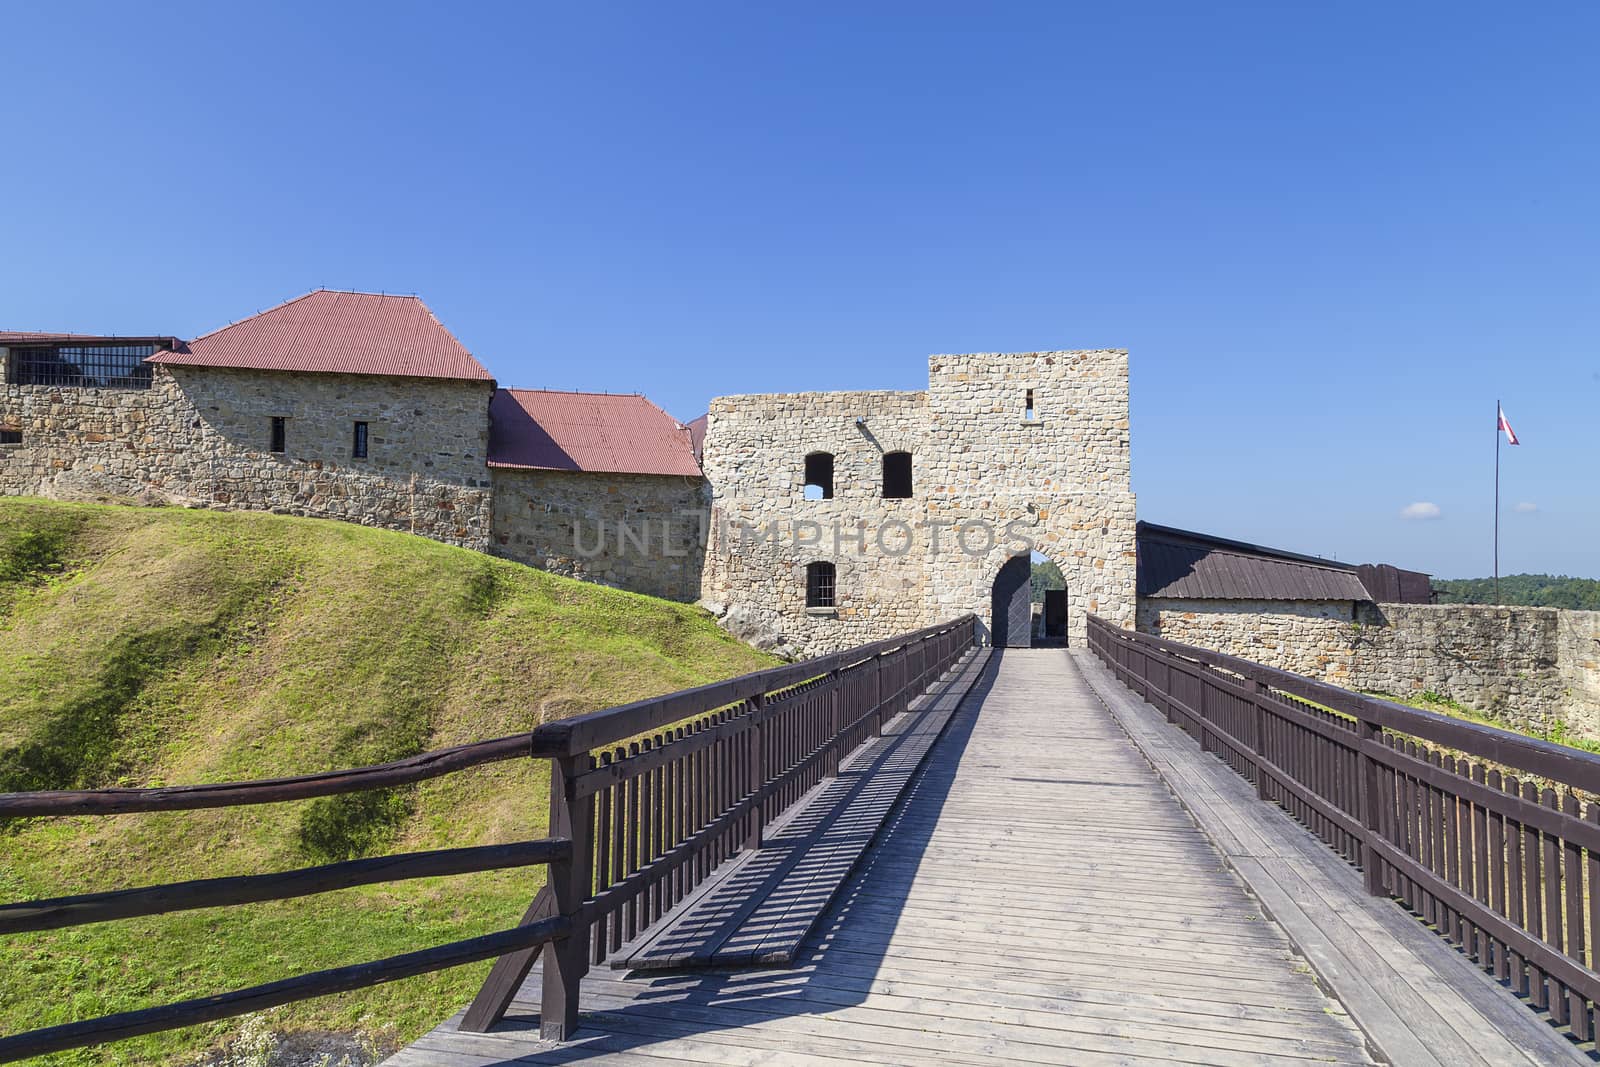 14th century Dobczyce Castle on Lake Dobczyce, near Krakow, Poland by mychadre77